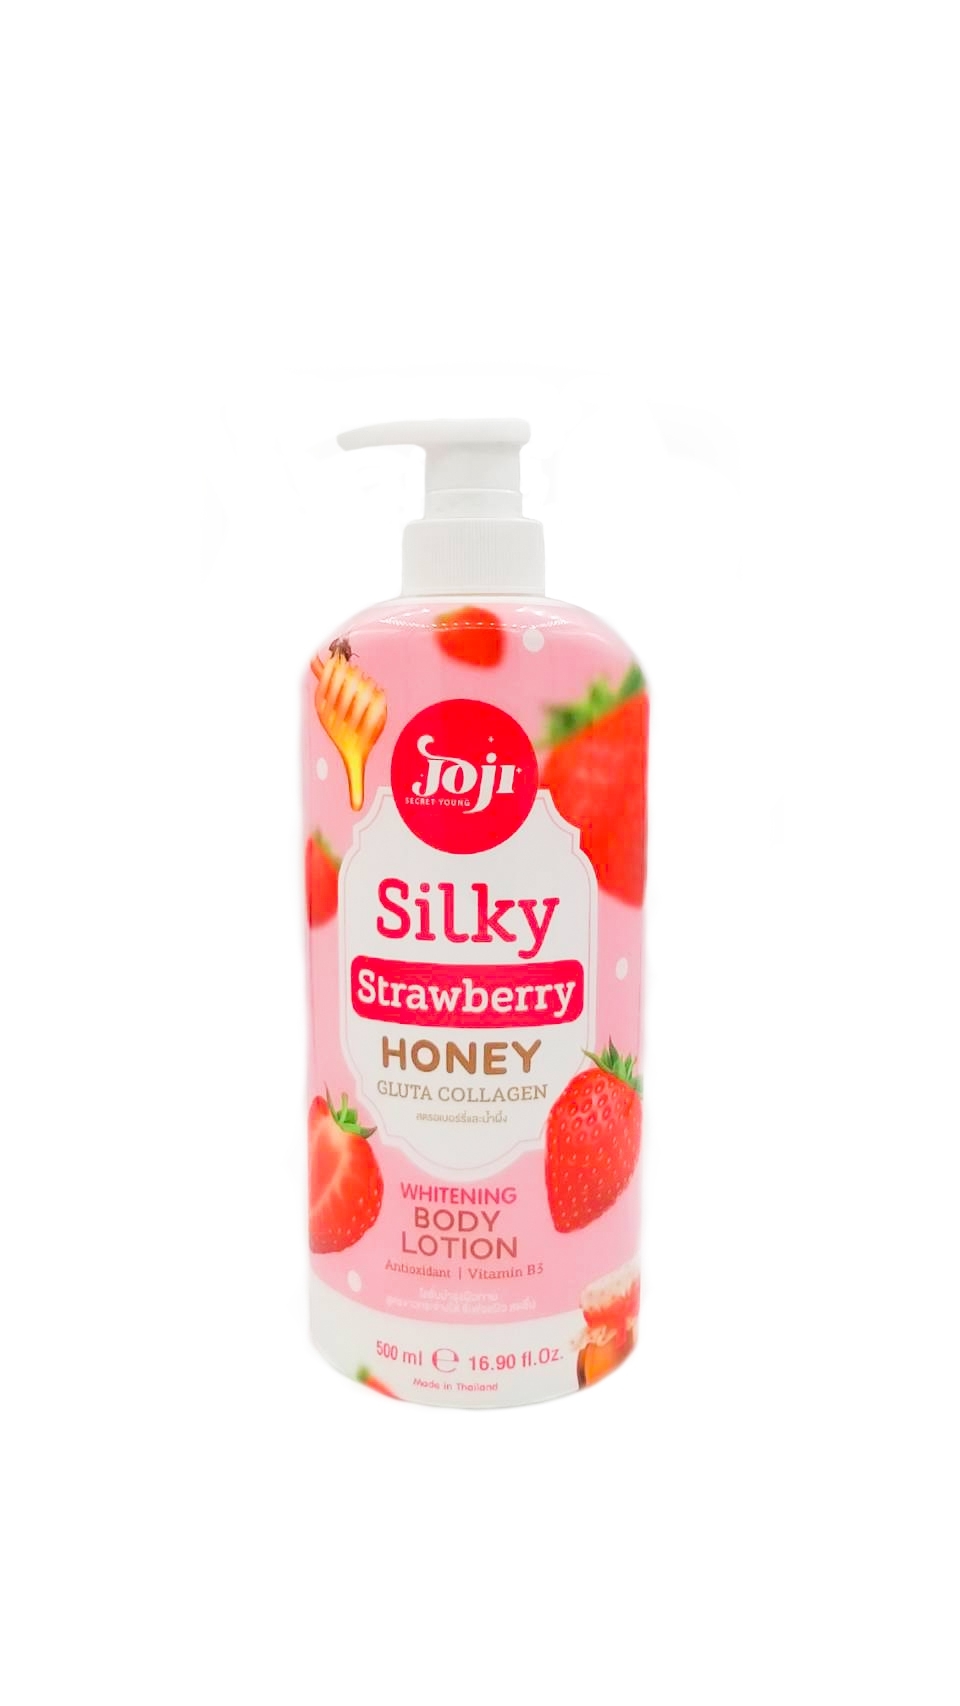 JOJI SECRET YOUNG Silky Strawberry Honey Gluta Collagen whitening Body Lotion 500g โลชั่นบำรุงผิวผสานคุณค่าจากผลไม้นานาชนิด ให้ผิวชุ่มชื้น พร้อมความกระจ่างใส